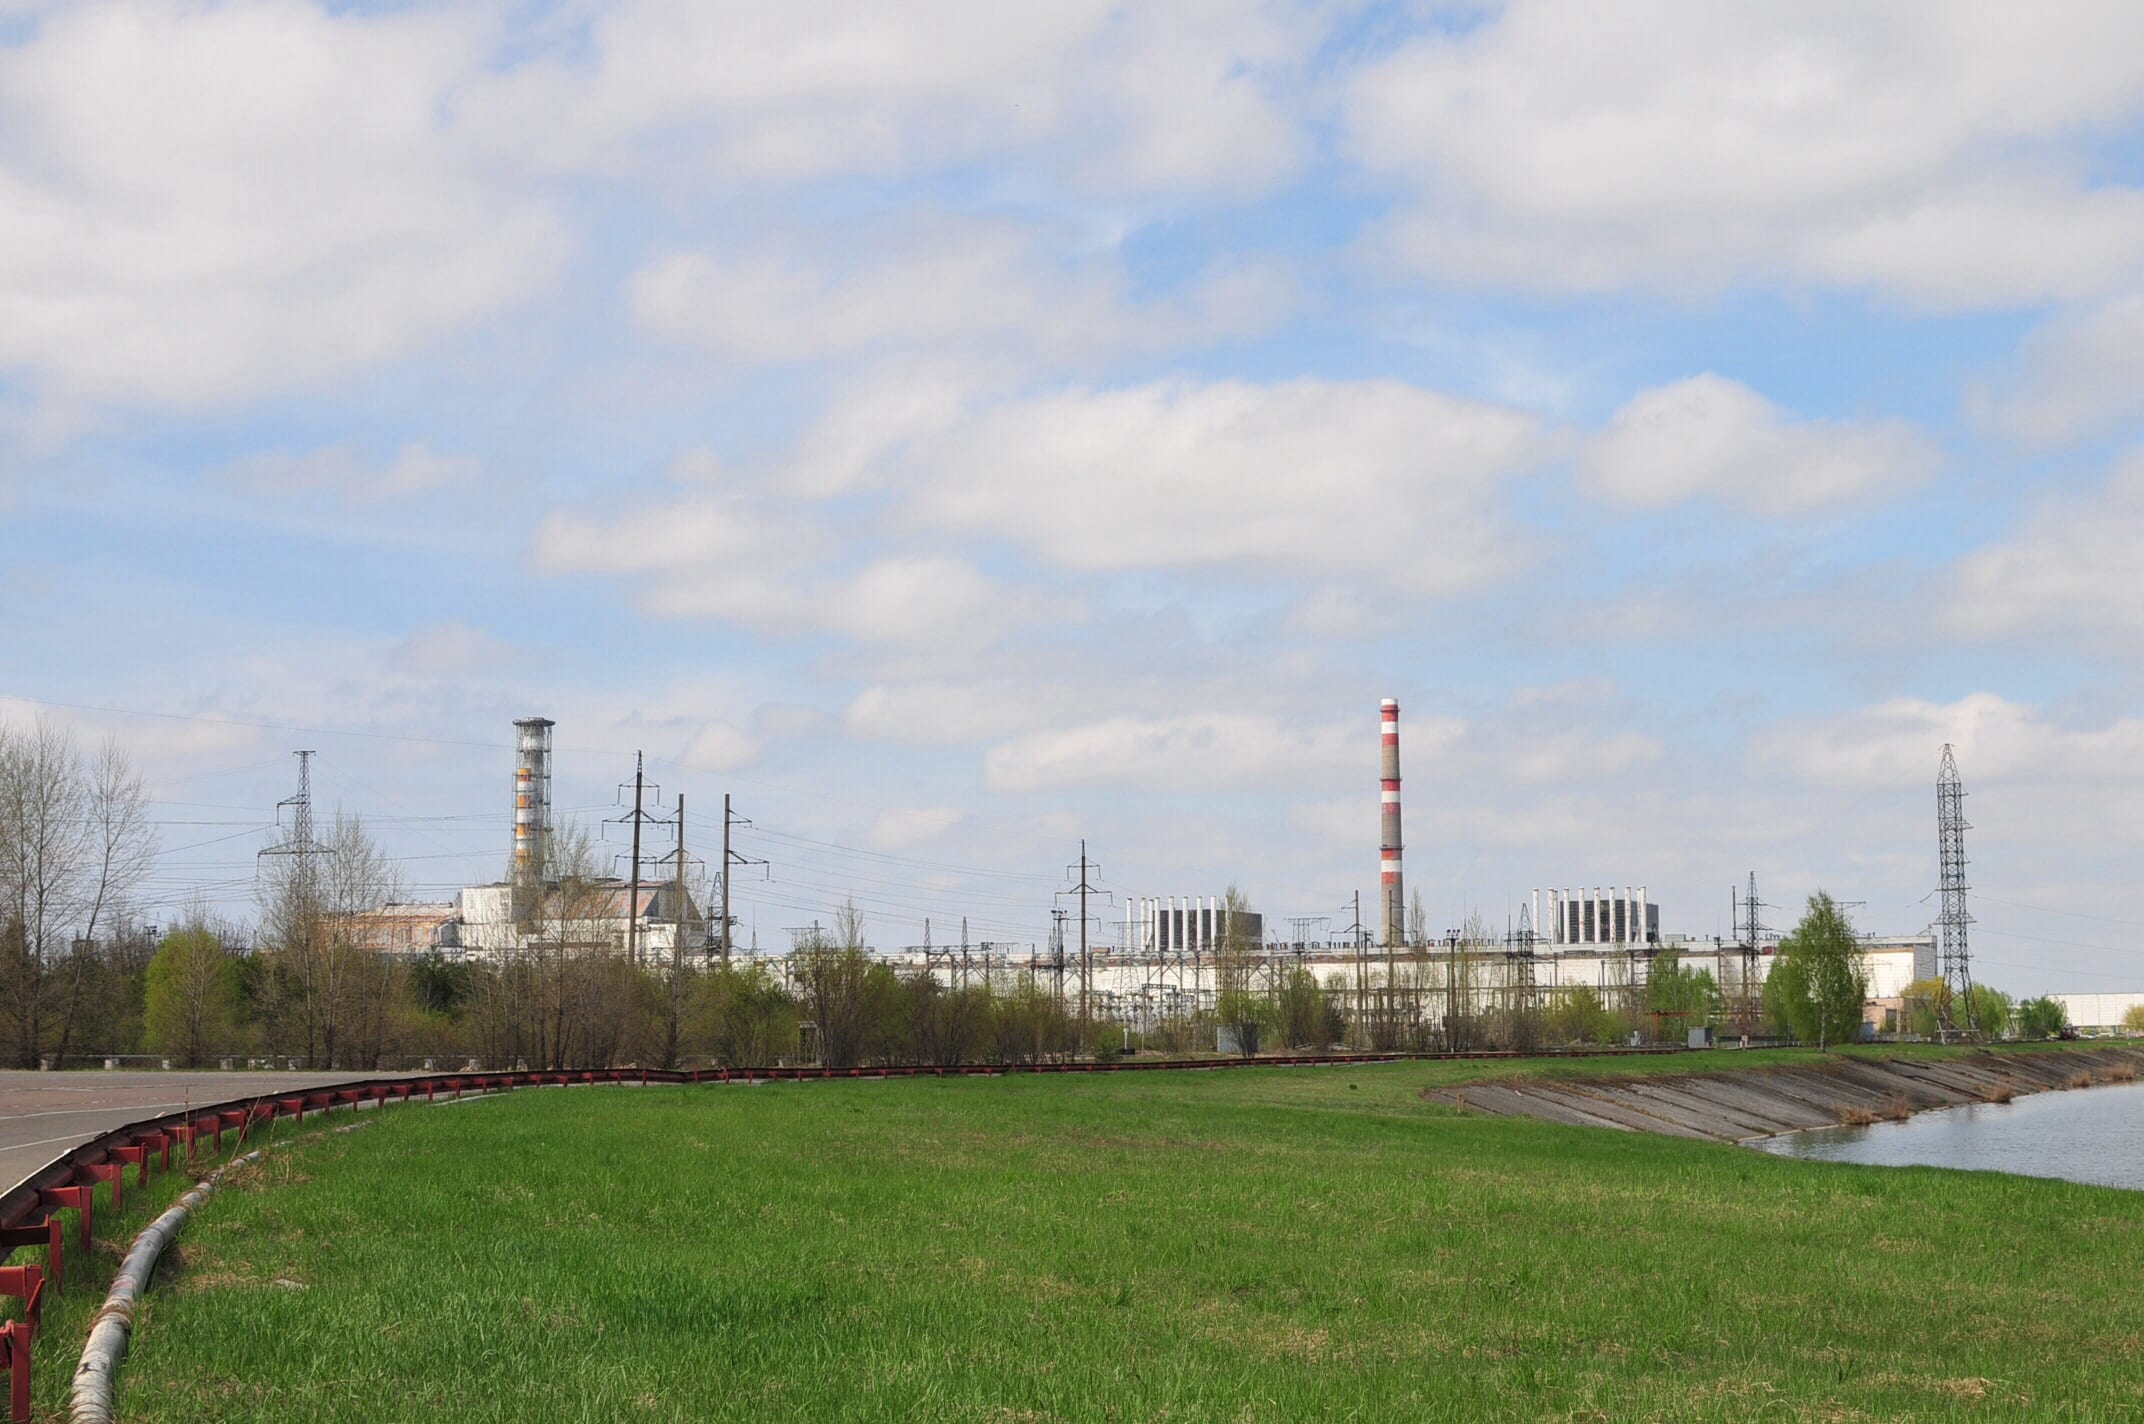 Chernobyl Power Station